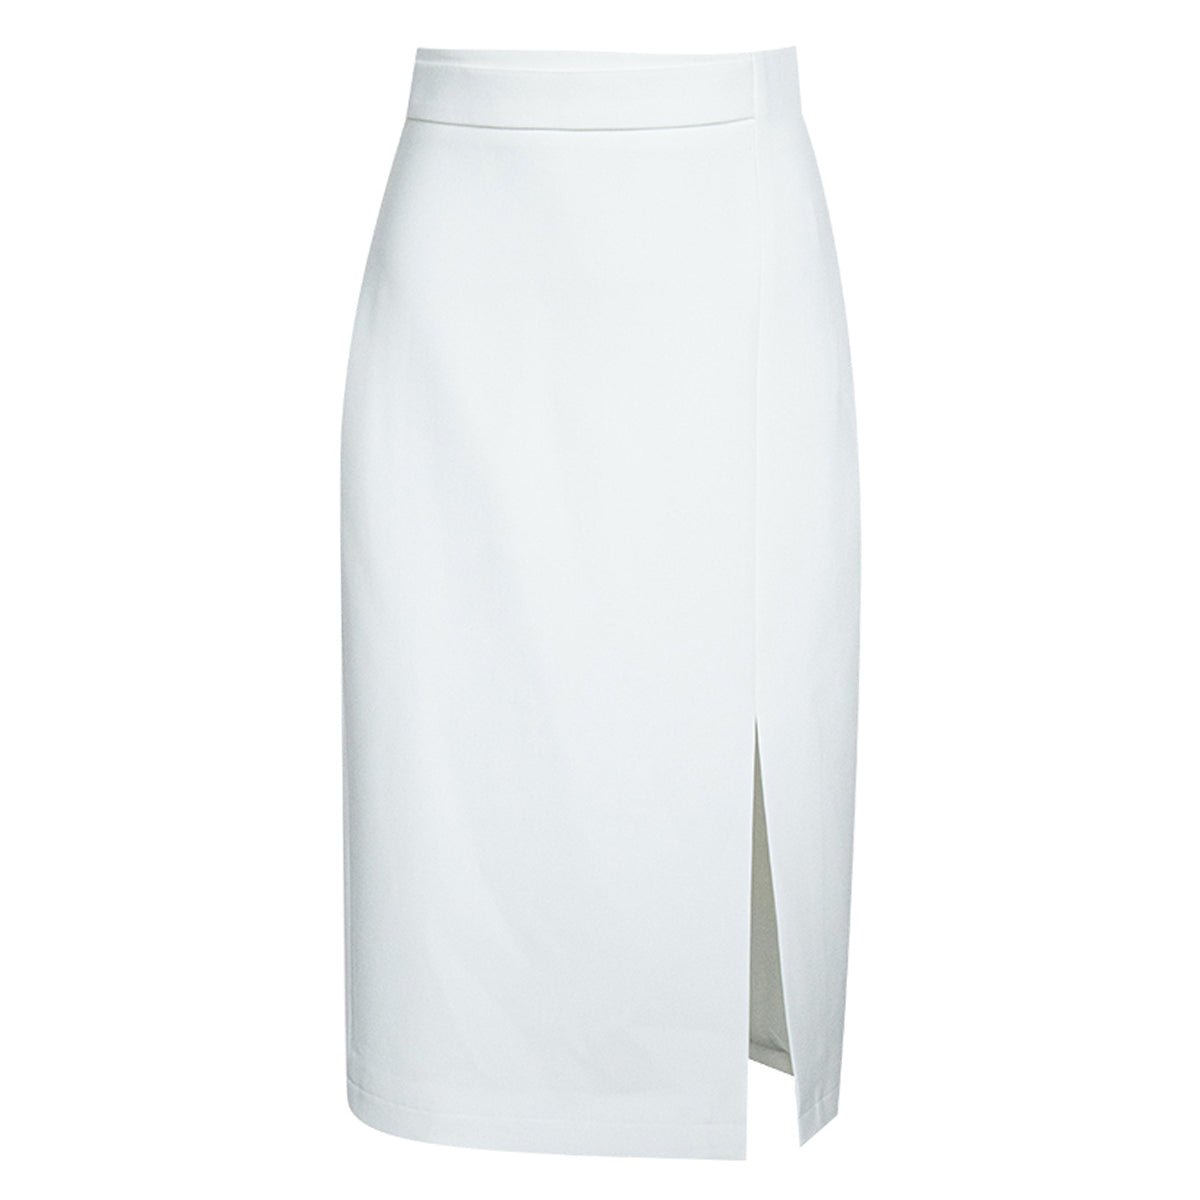 High-Waisted White Midi Skirt - 0cm